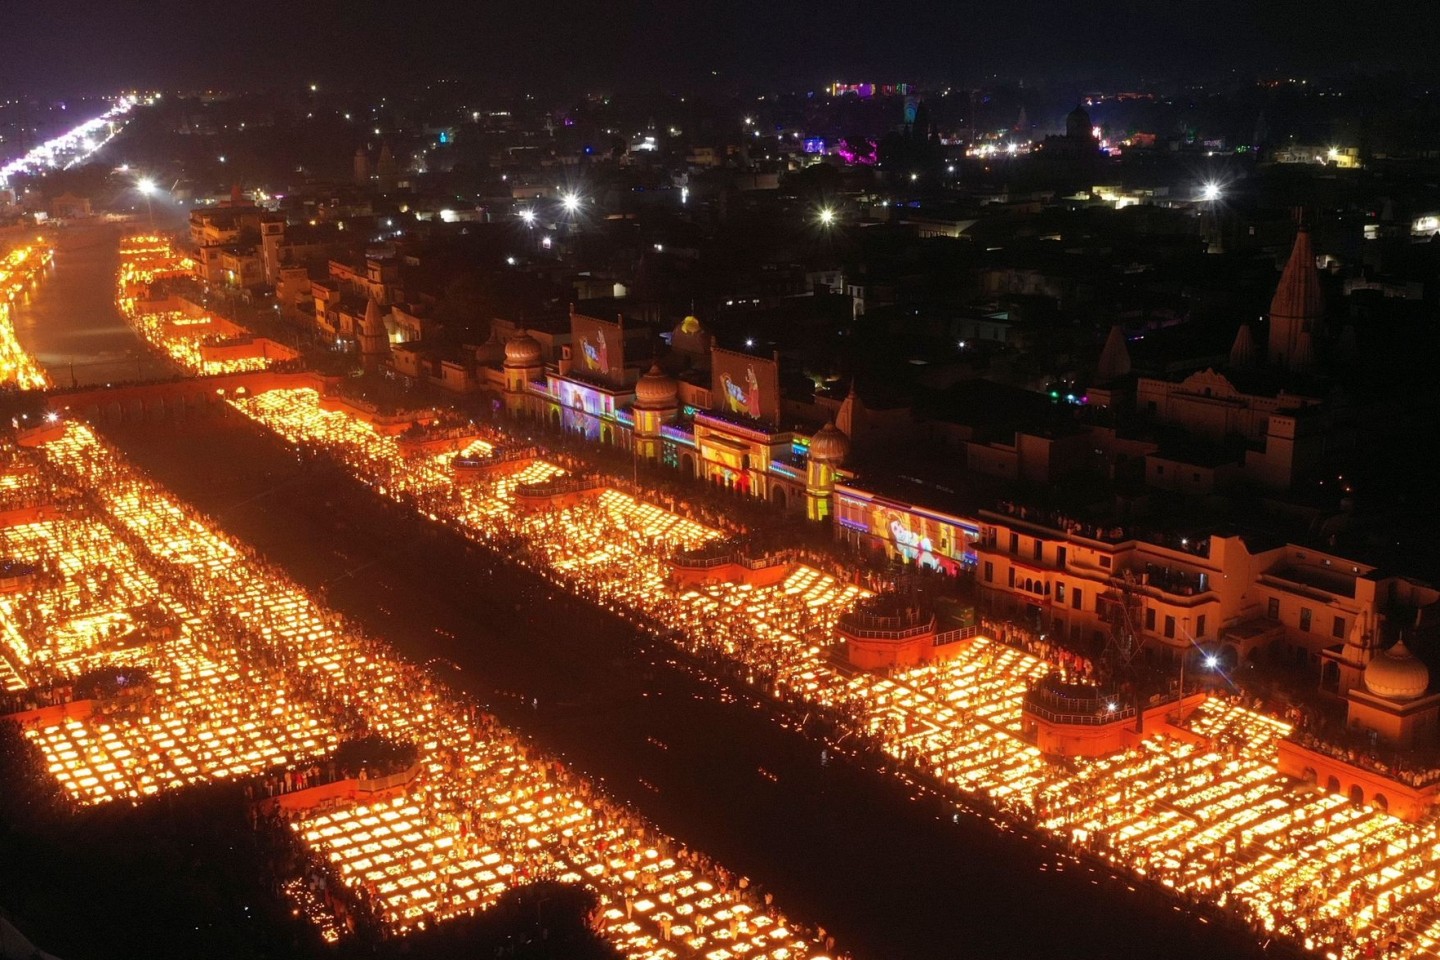 Über 900.000 irdene Lampen wurden im indischen Ayodhaya angezündet und brannten 45 Minuten lang.